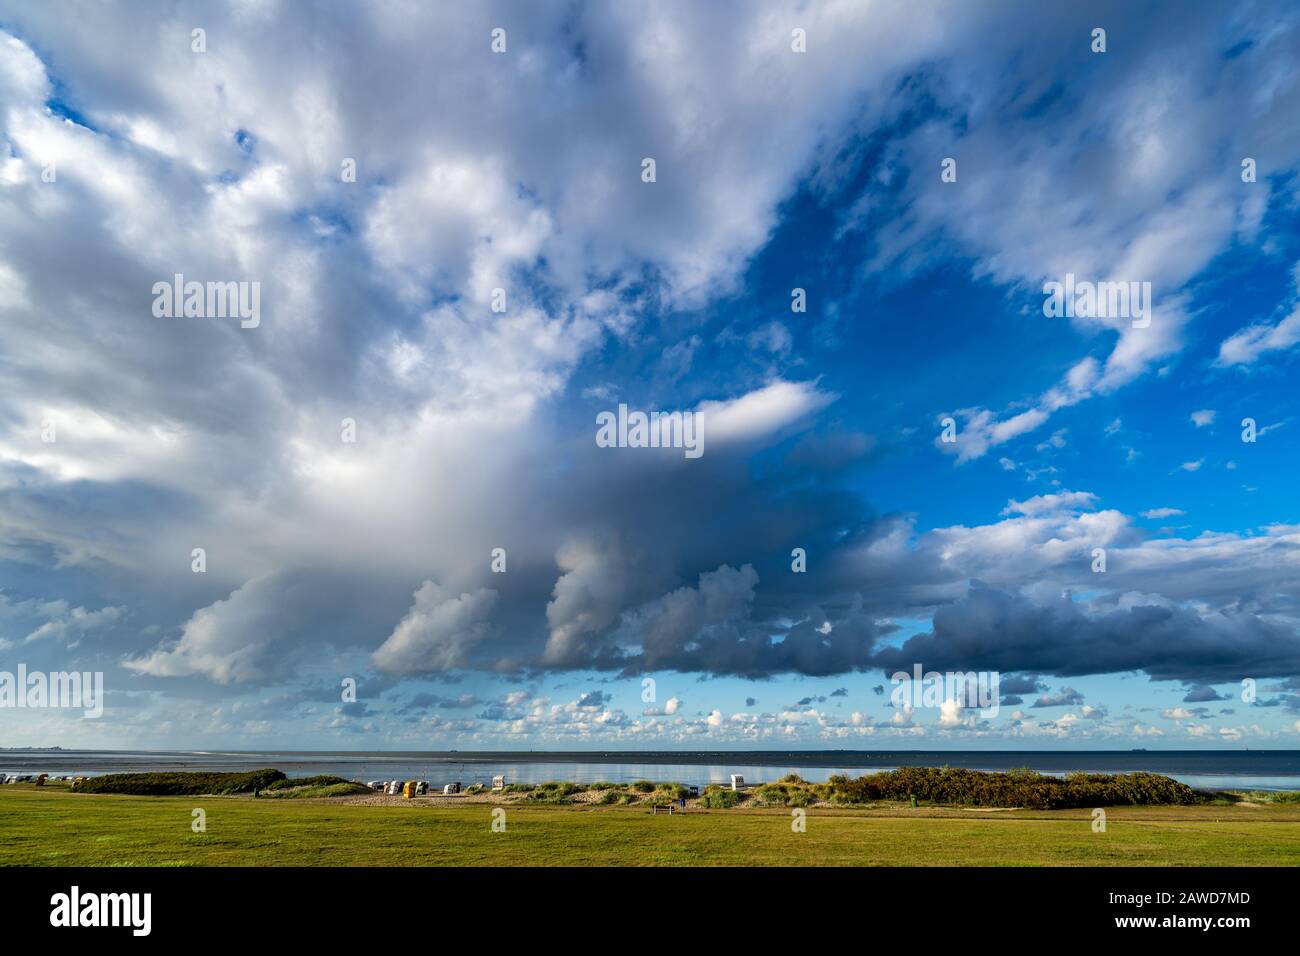 Gewitterwolken an der Nordseekueste, Wetterumschwung, Sturmwolken, Stock Photo